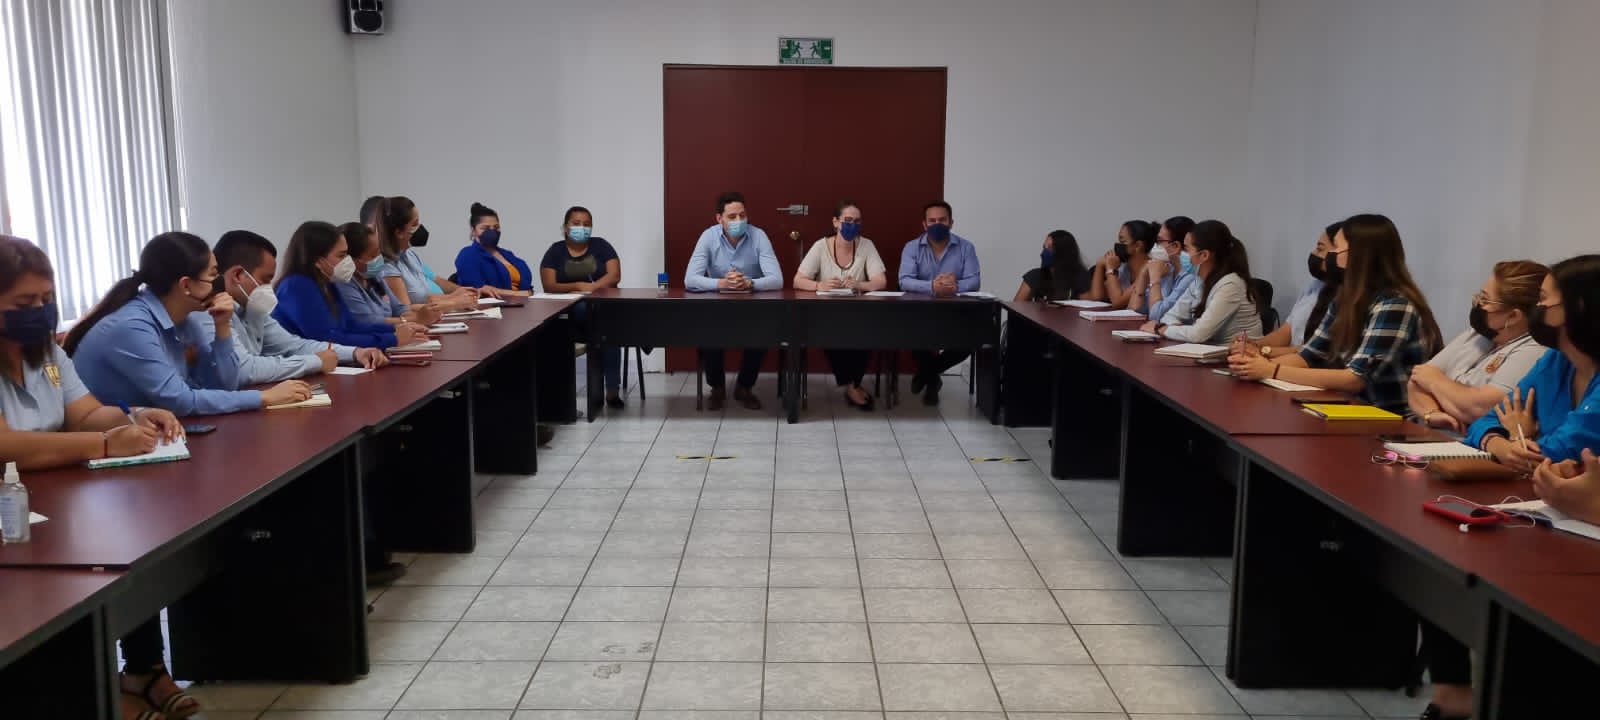 Destaca la Justicia Alternativa en Chiapas